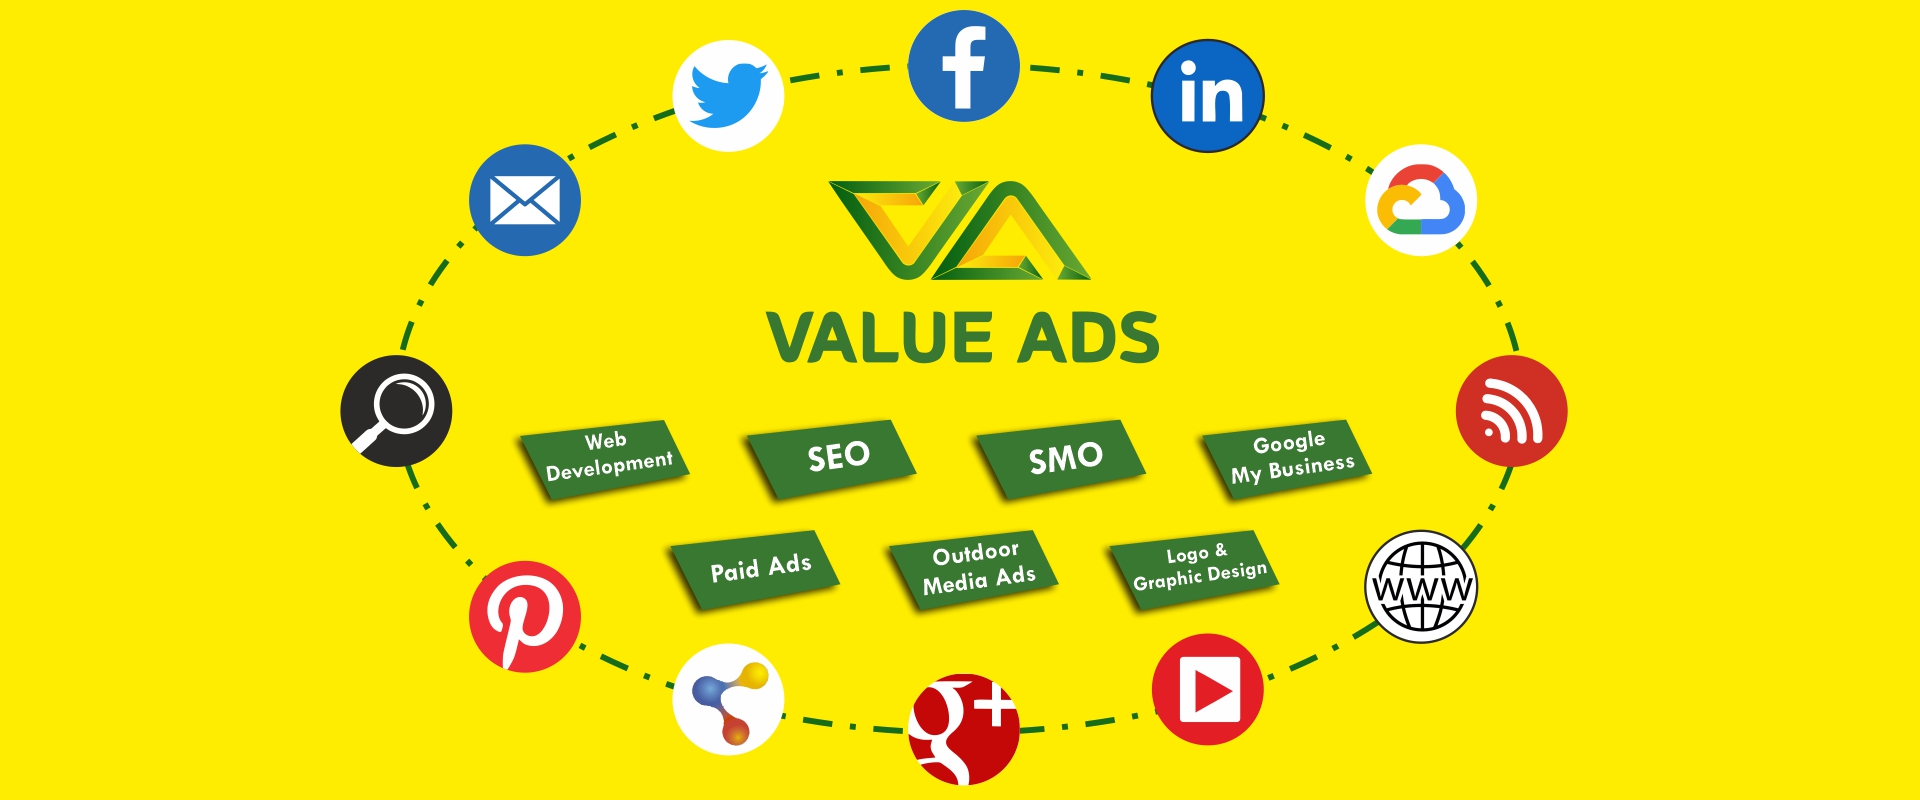 Value Ads Enterprises